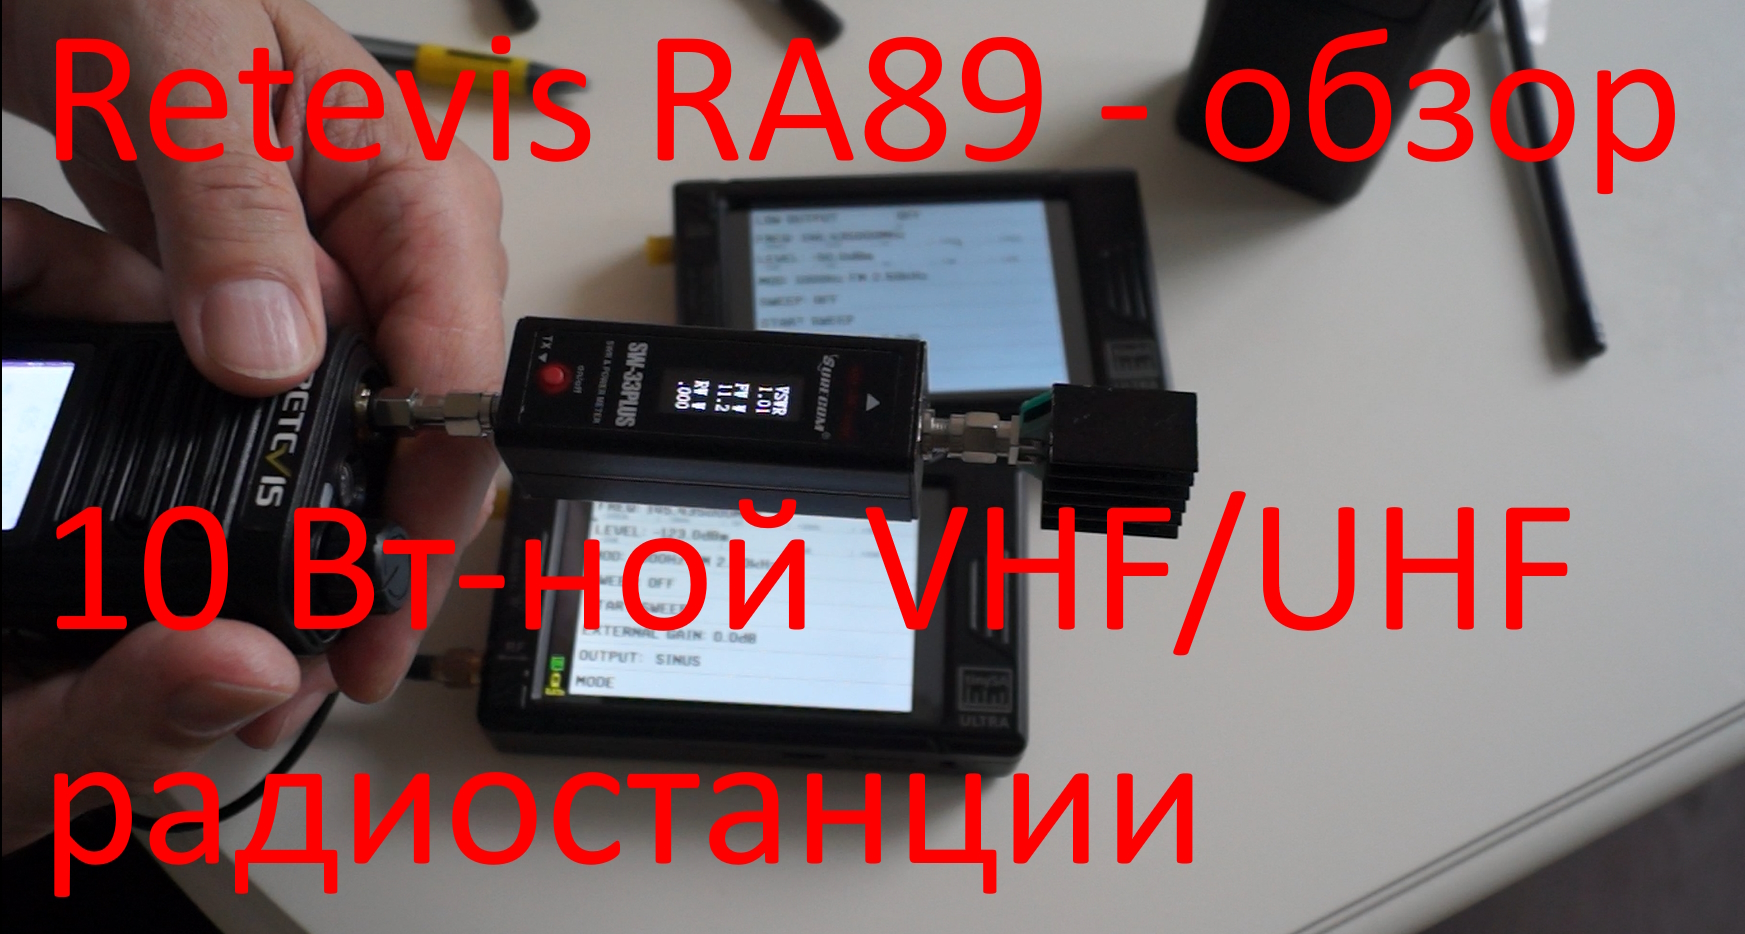 Retevis RA89 - обзор, измерение параметров 10 Вт-ной VHF/UHF рации